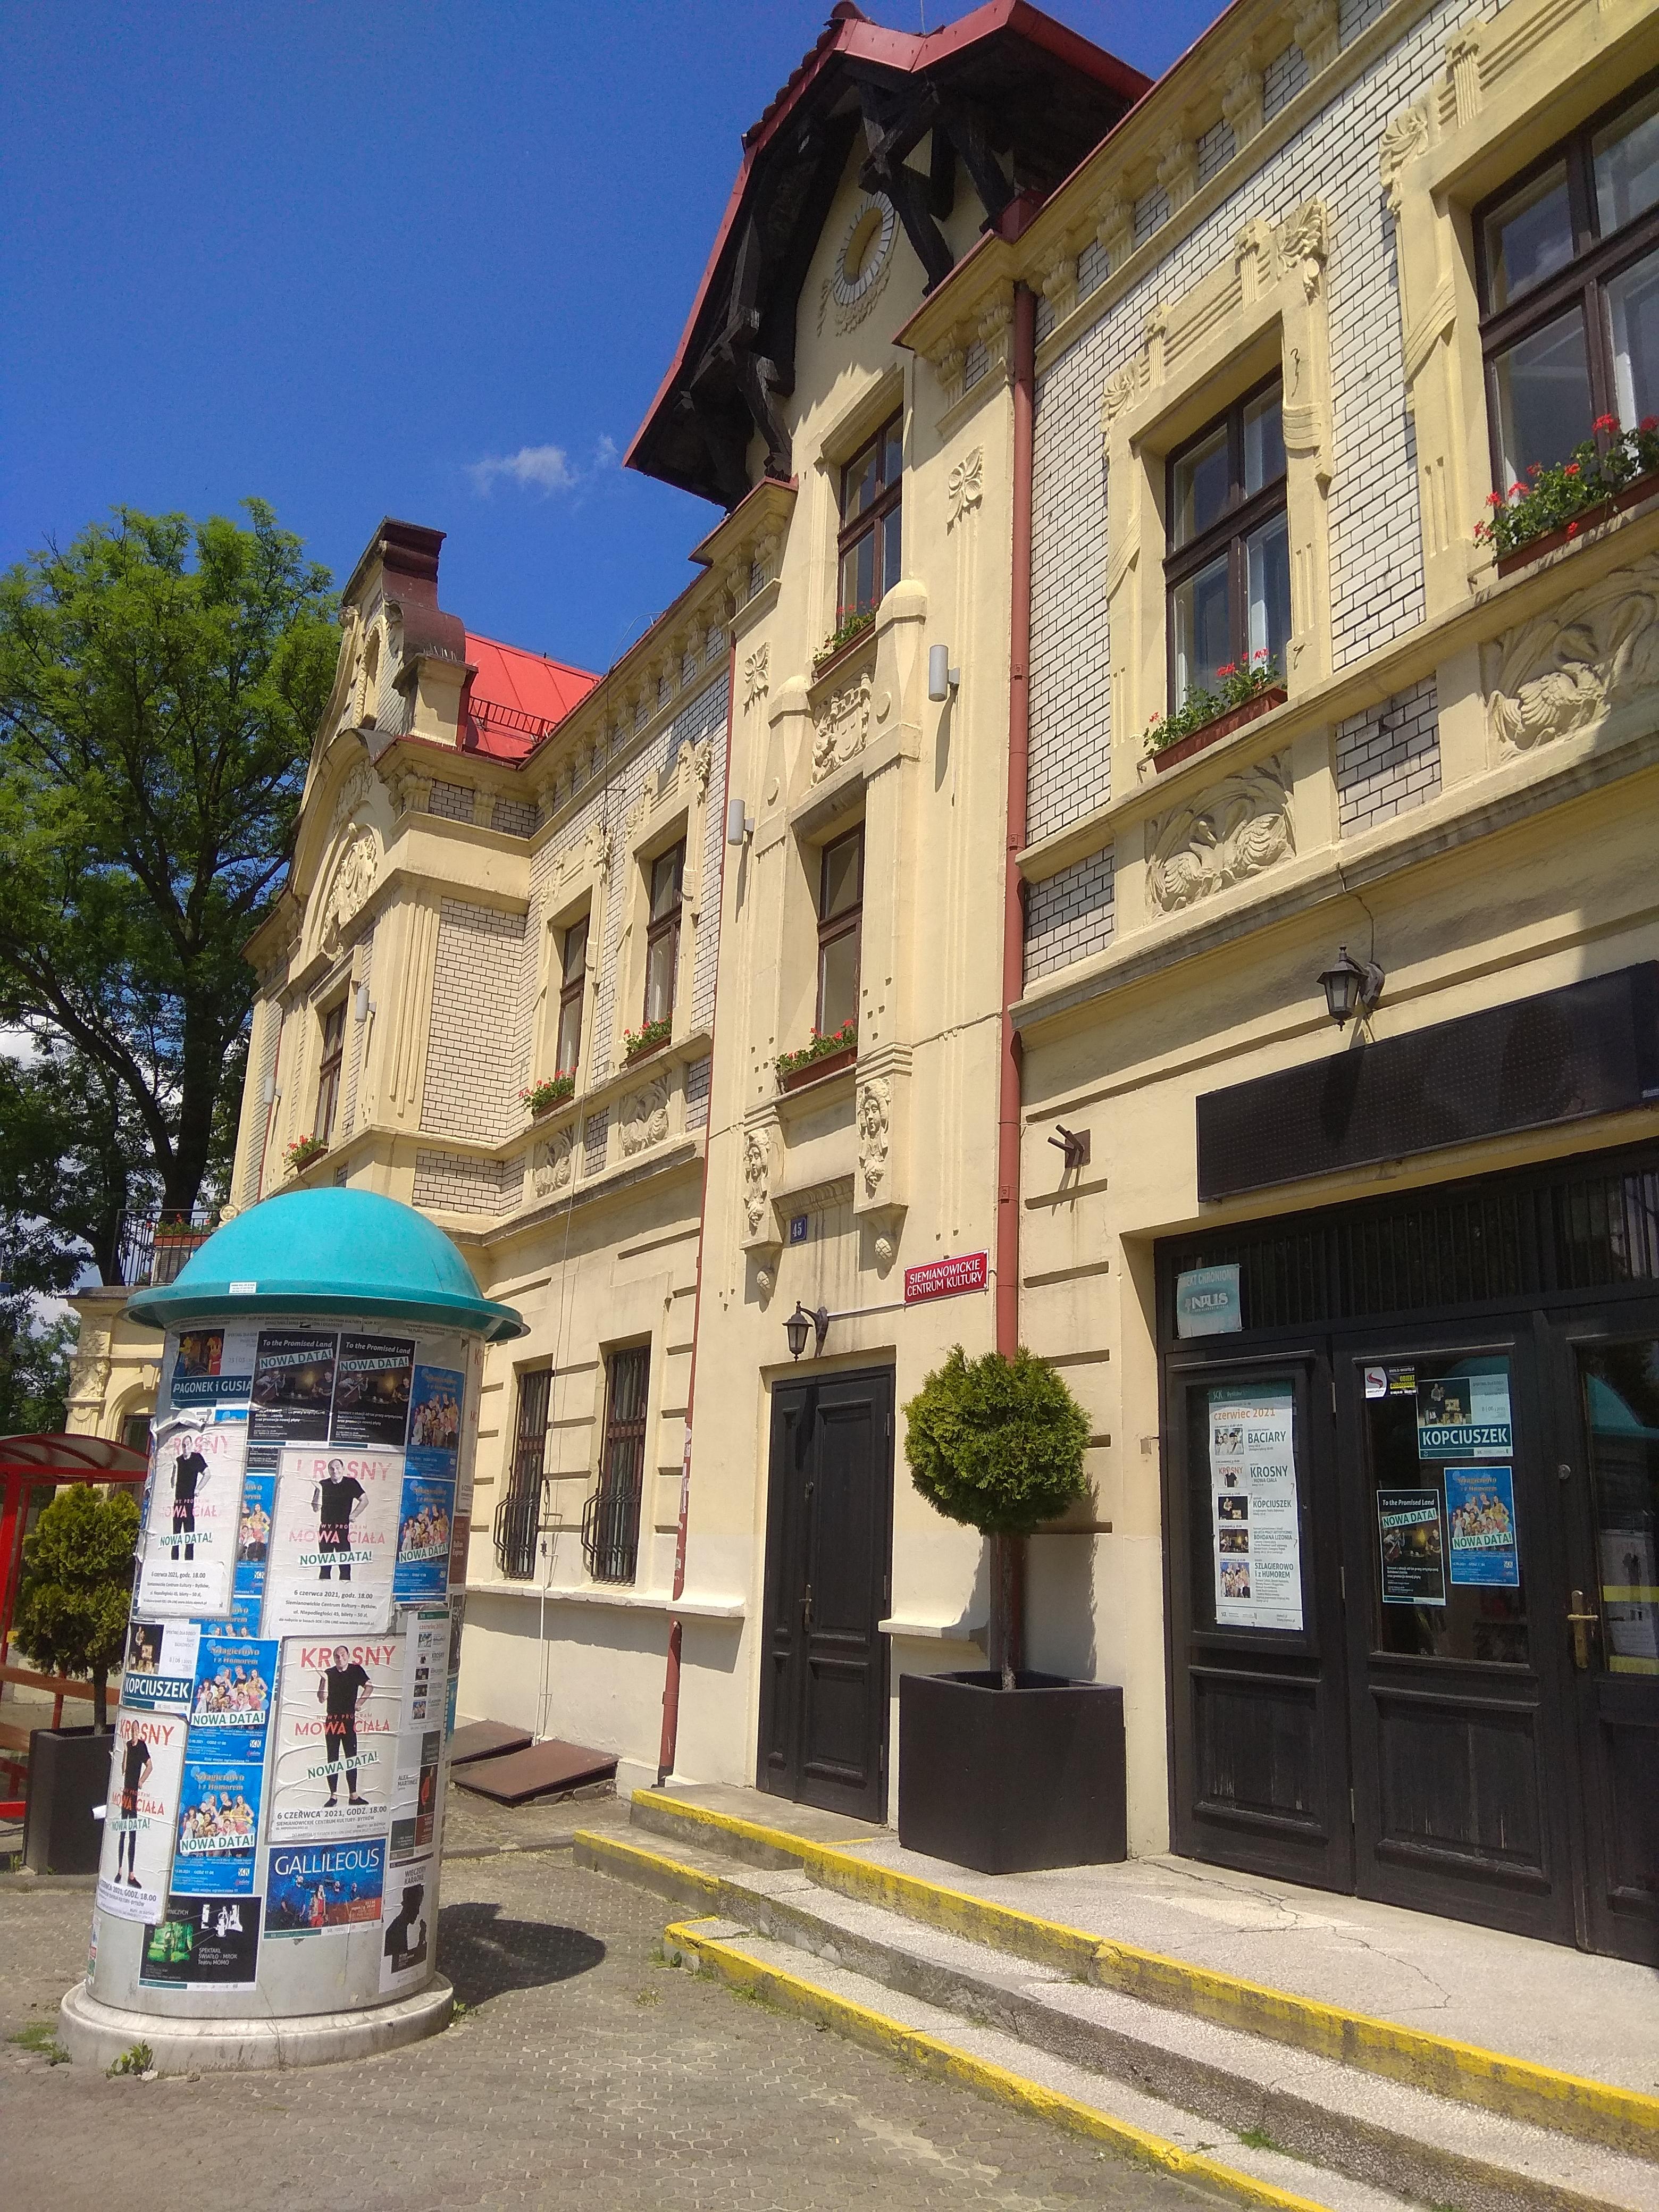 Kremowa fasada budynku SCK-Bytków, a przed nią słup ogłoszeniowy z plakatami reklamującymi wydarzenia